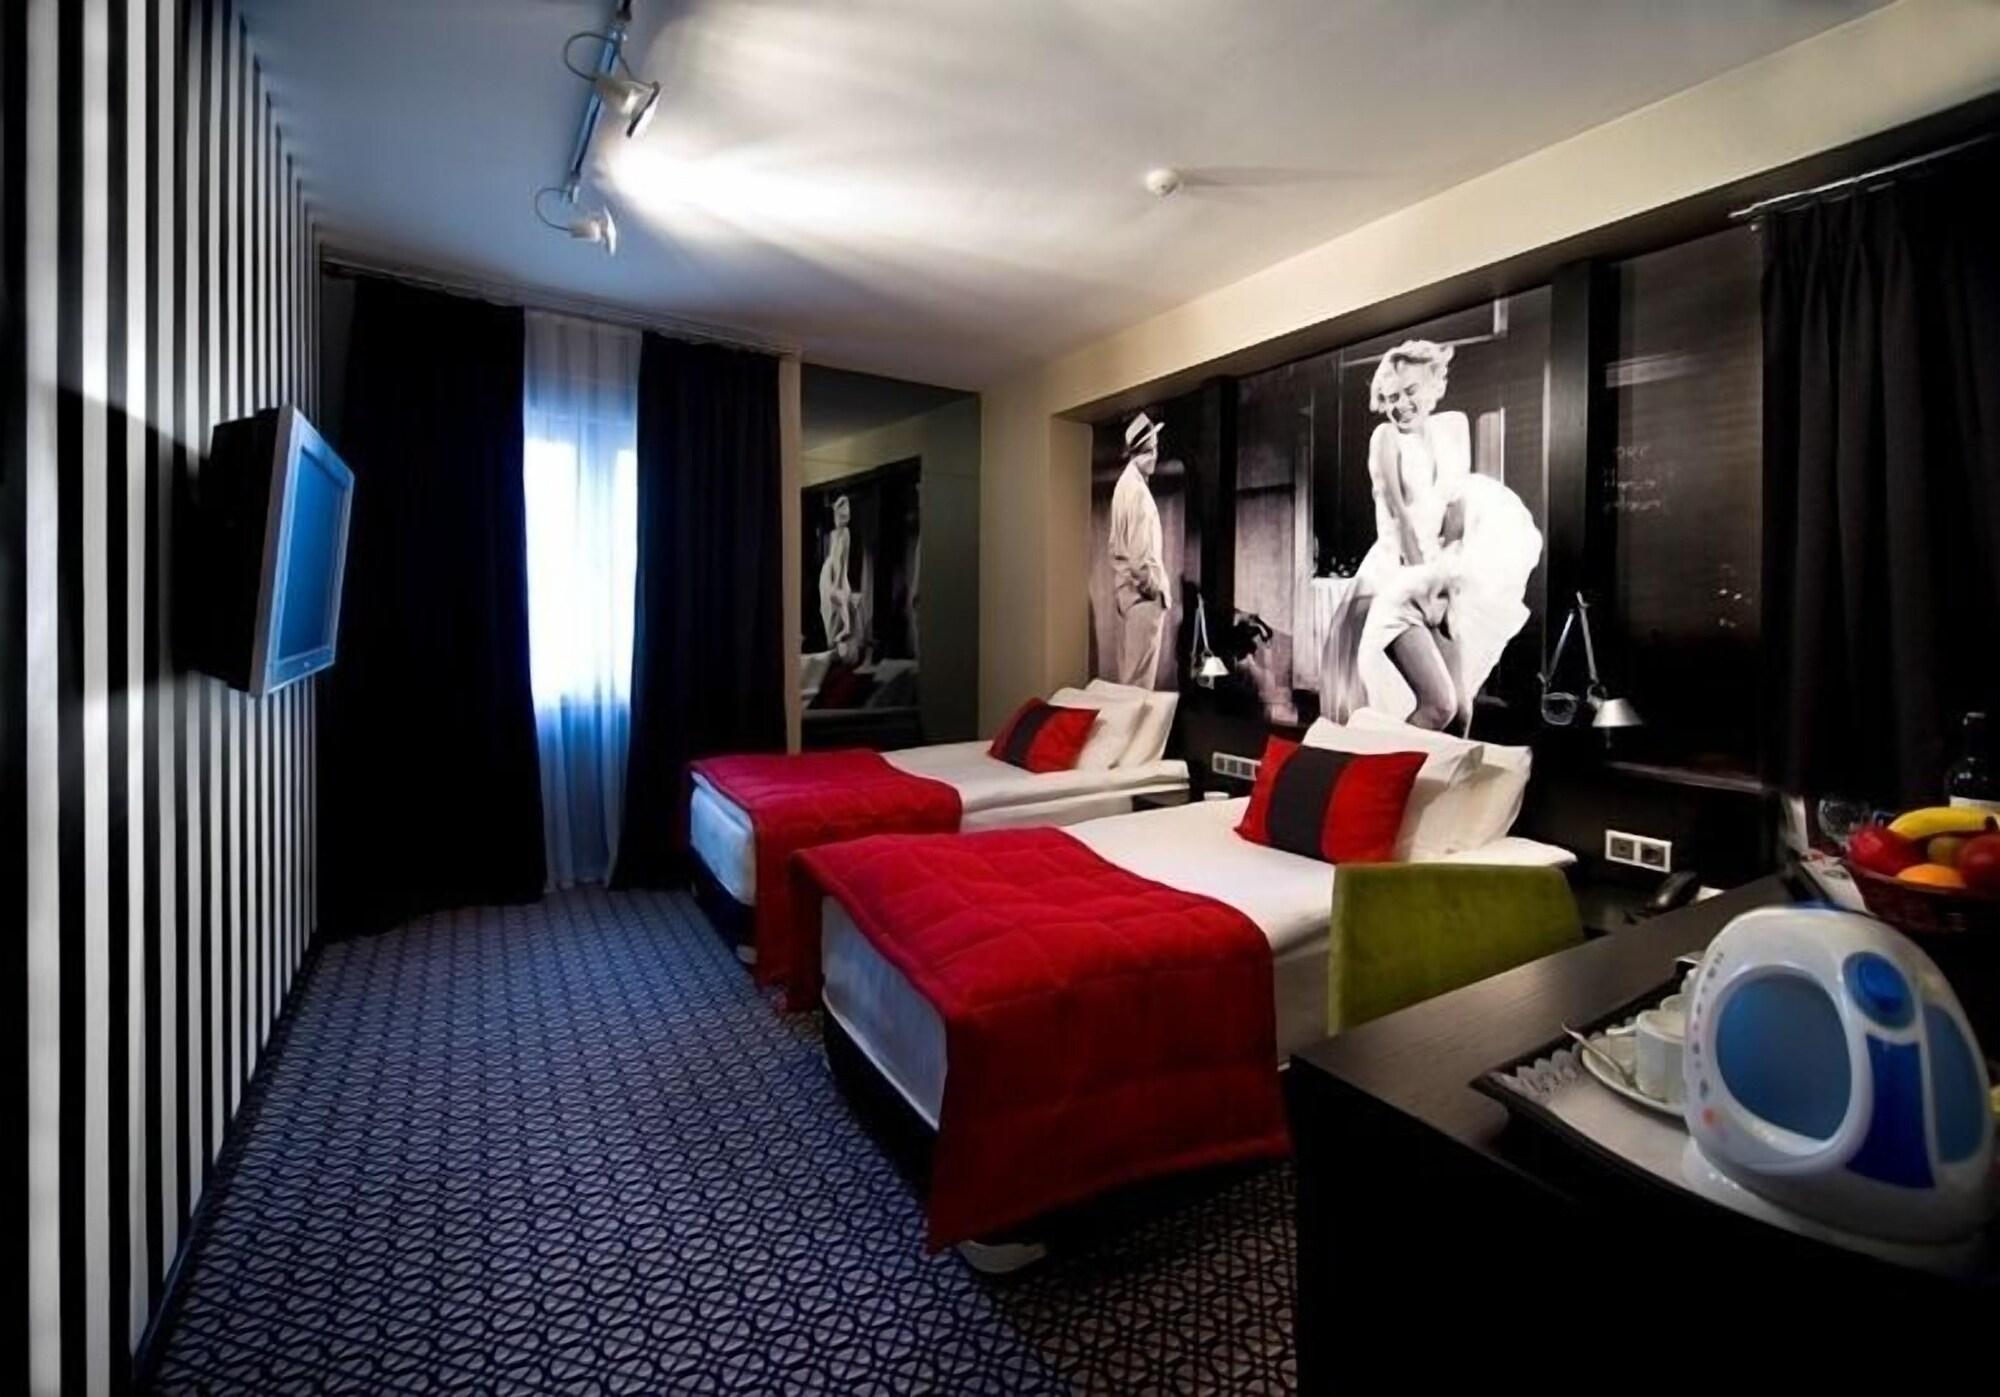 Maltepe 2000 Hotel Ankara Ngoại thất bức ảnh